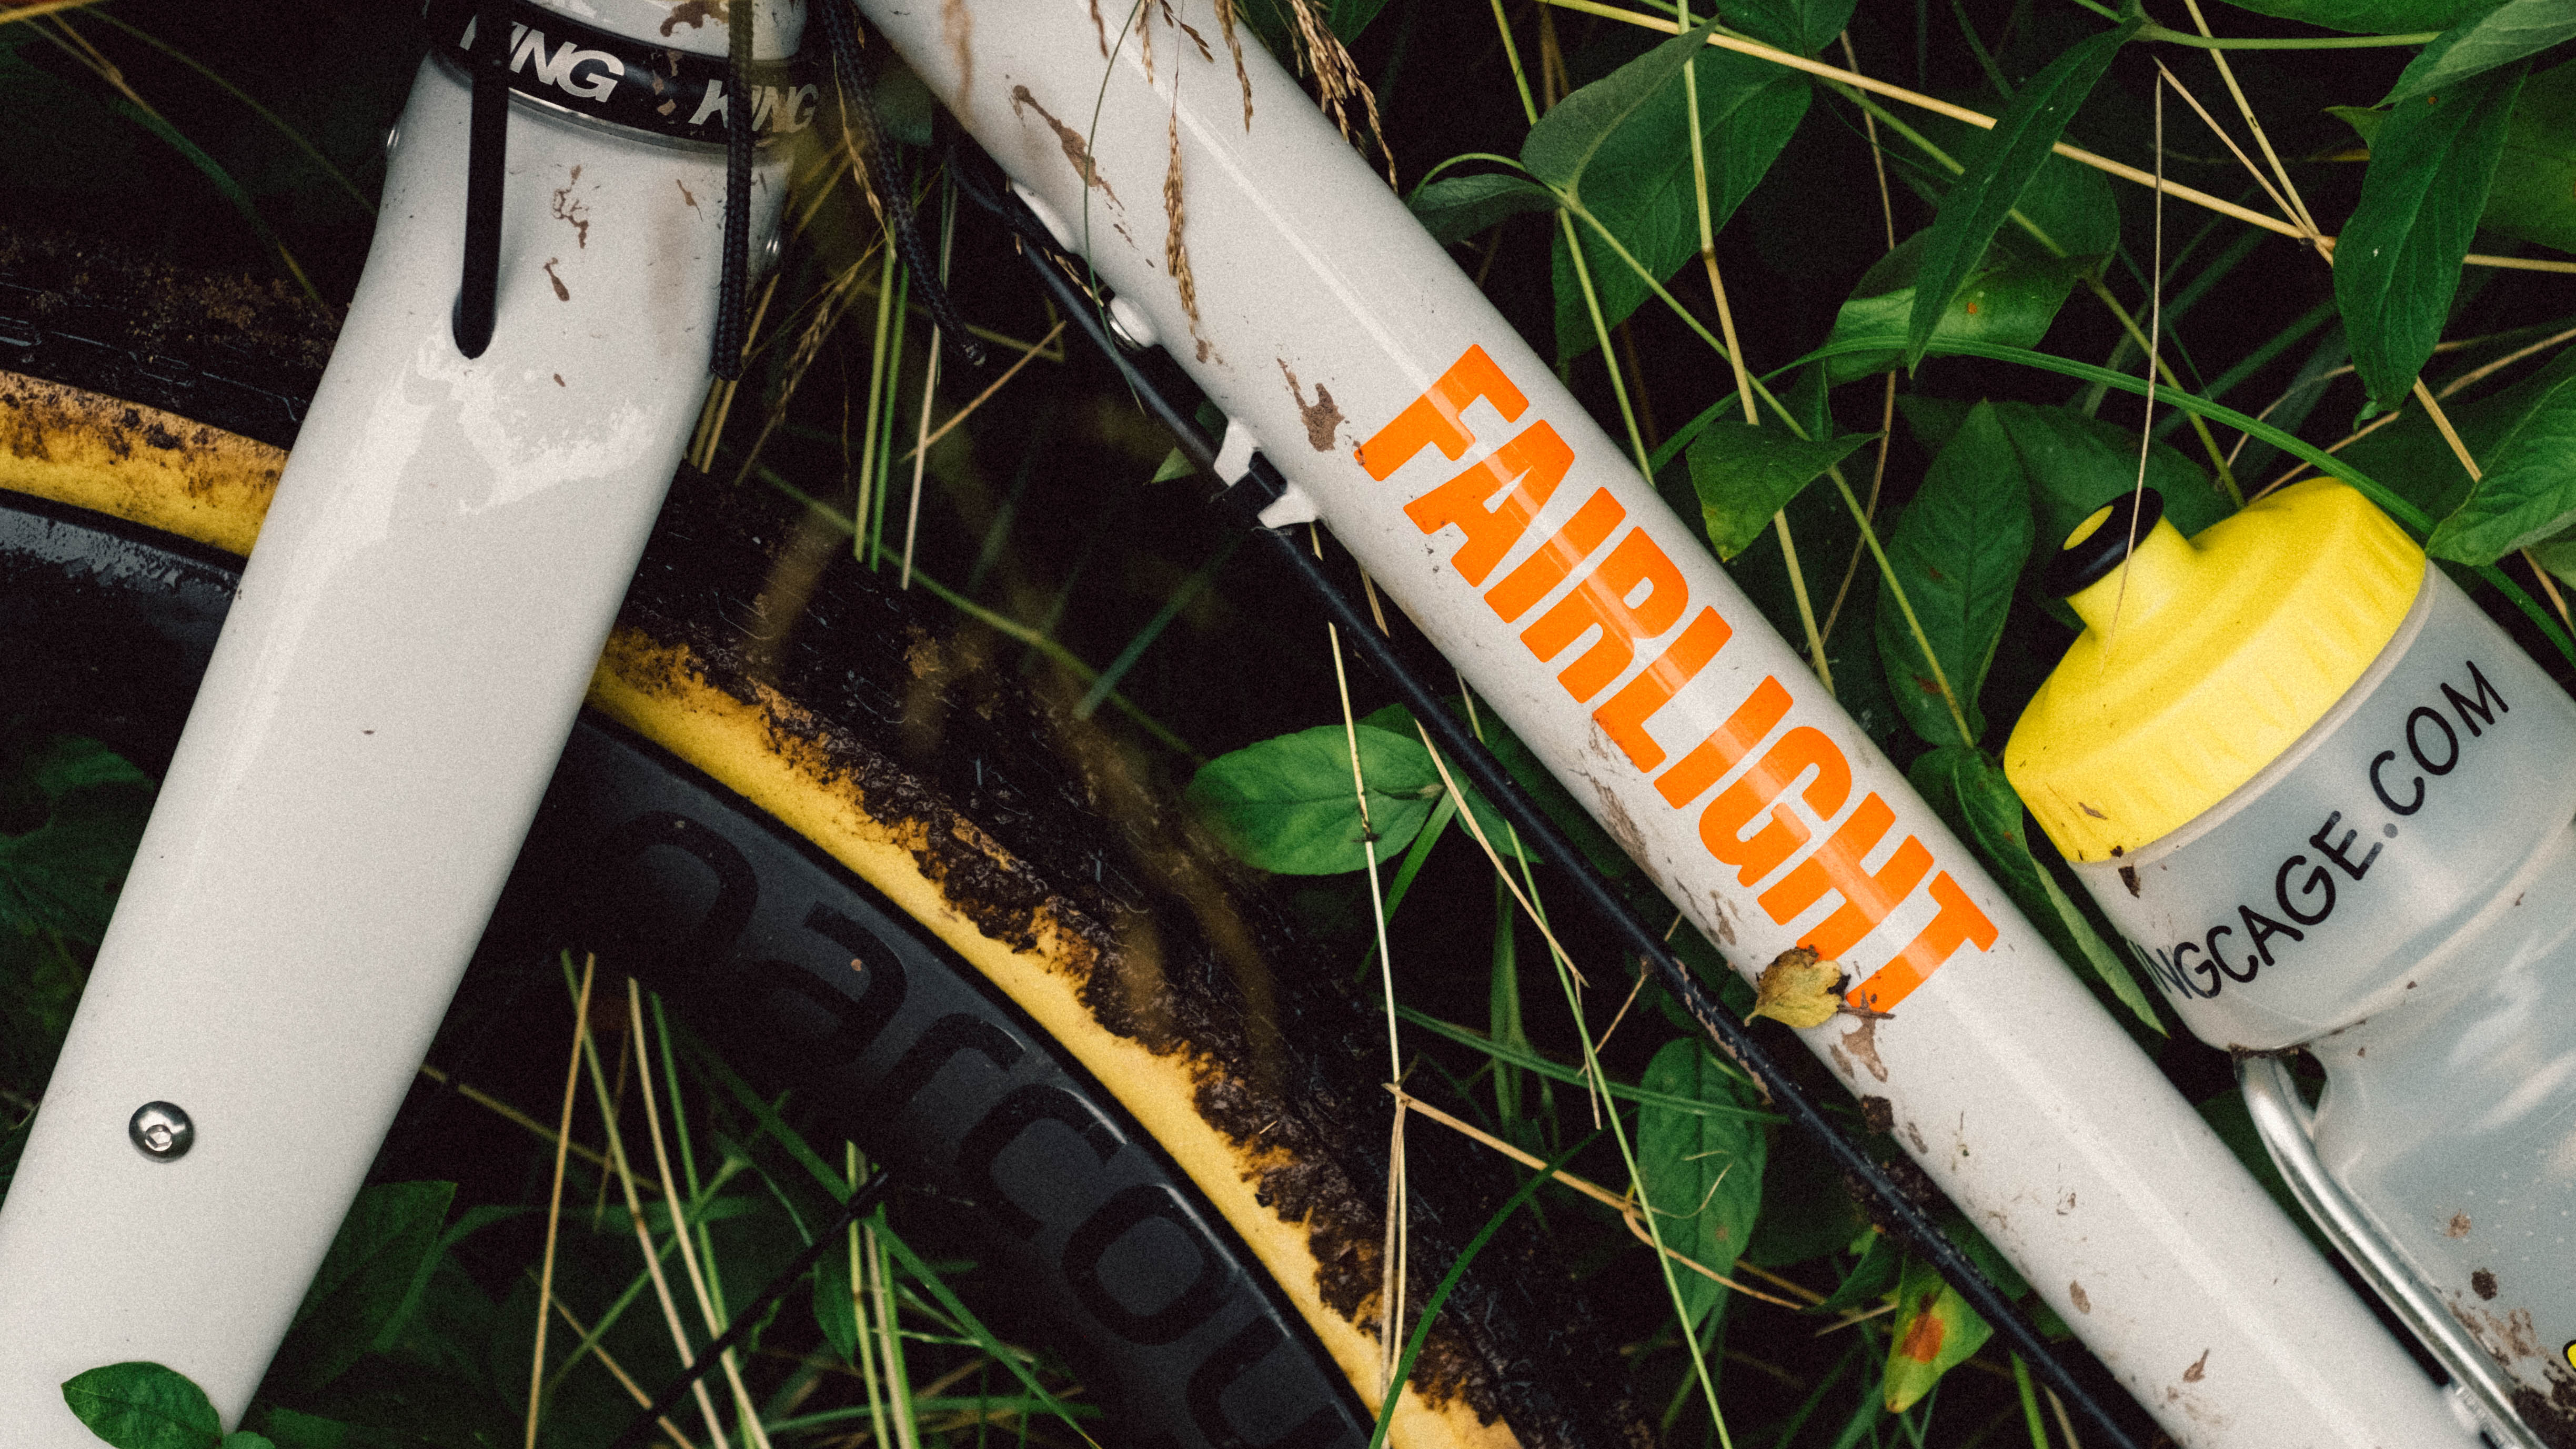 Le côté d'un vélo blanc avec des logos orange montrant des pneus tanwall boueux